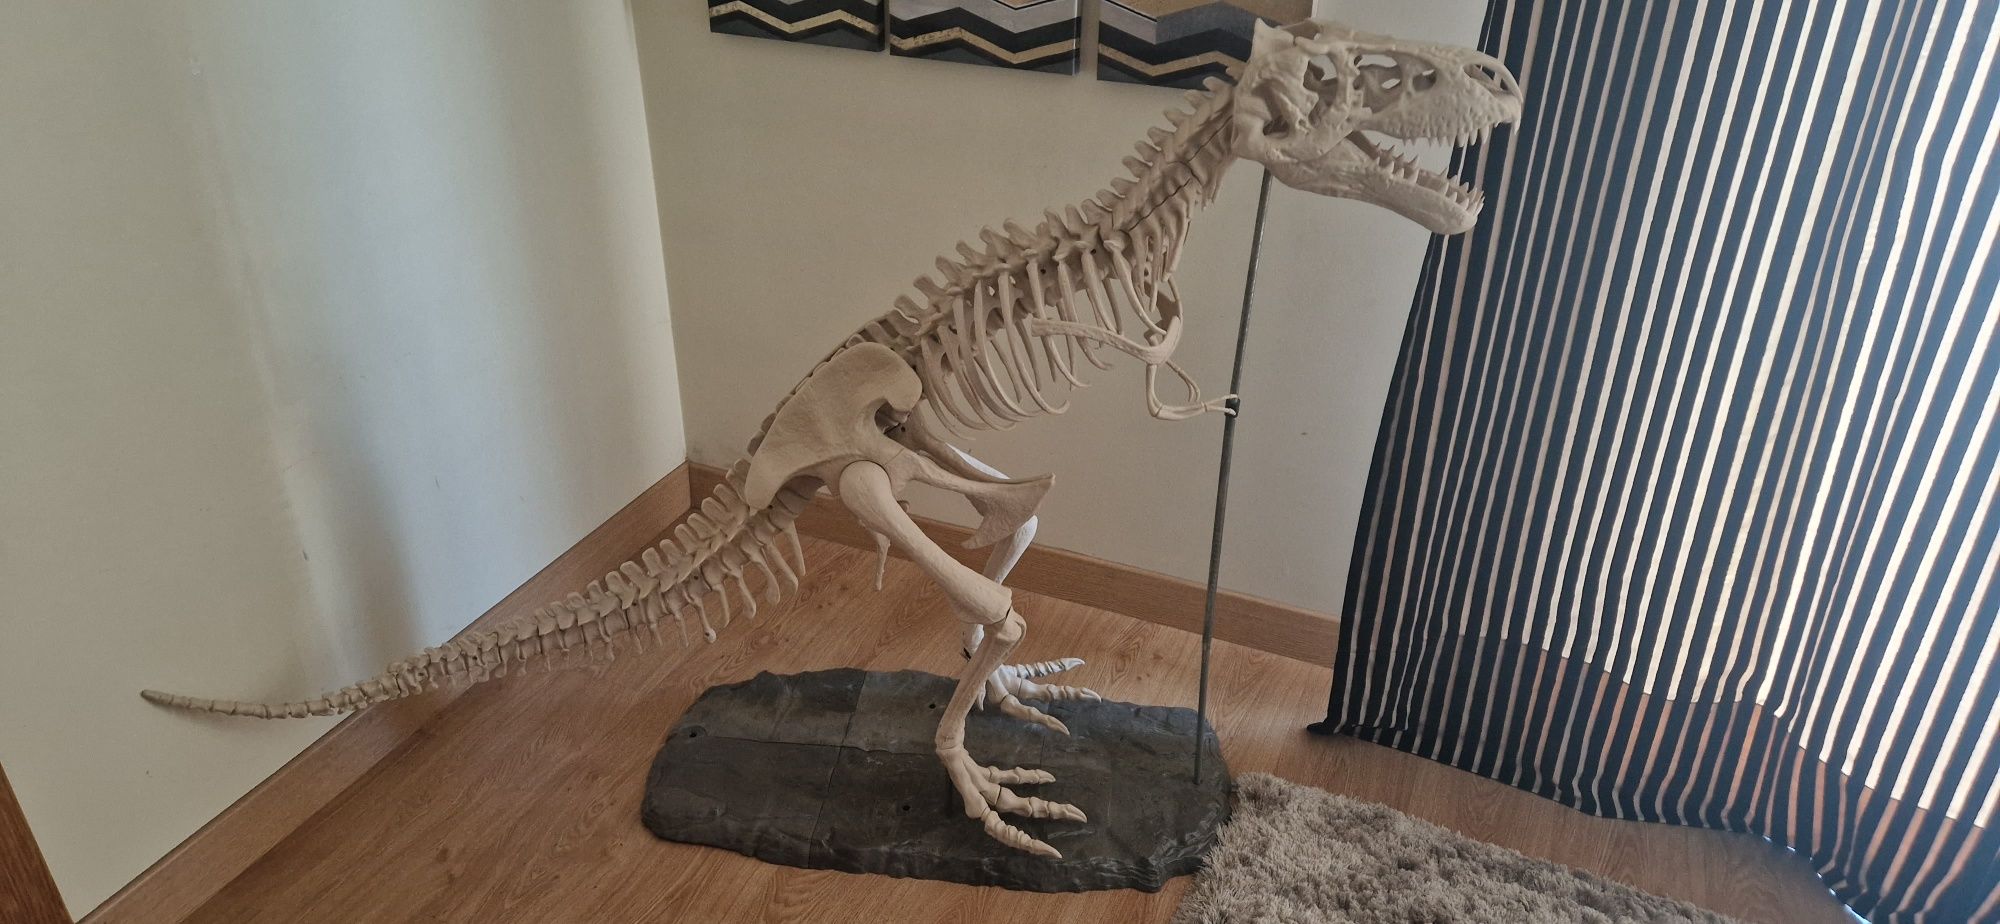 Dinossauro com pele e esqueleto